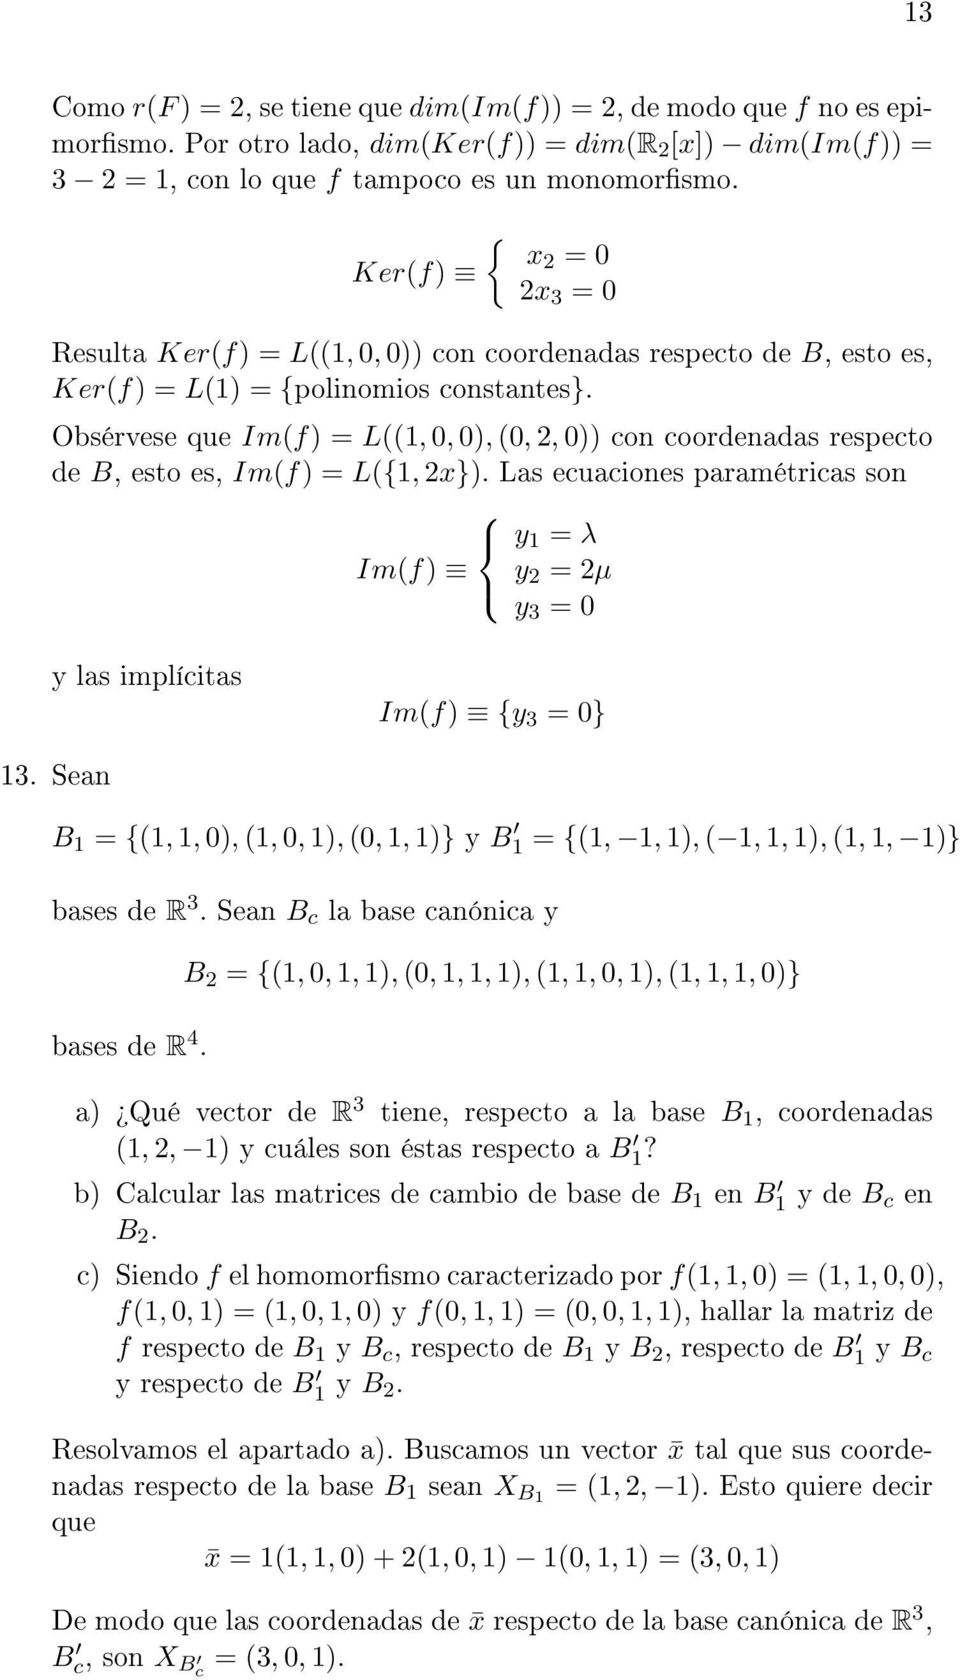 Obsérvese que Im(f) = L((1, 0, 0), (0, 2, 0)) con coordenadas respecto de B, esto es, Im(f) = L(1, 2x}).